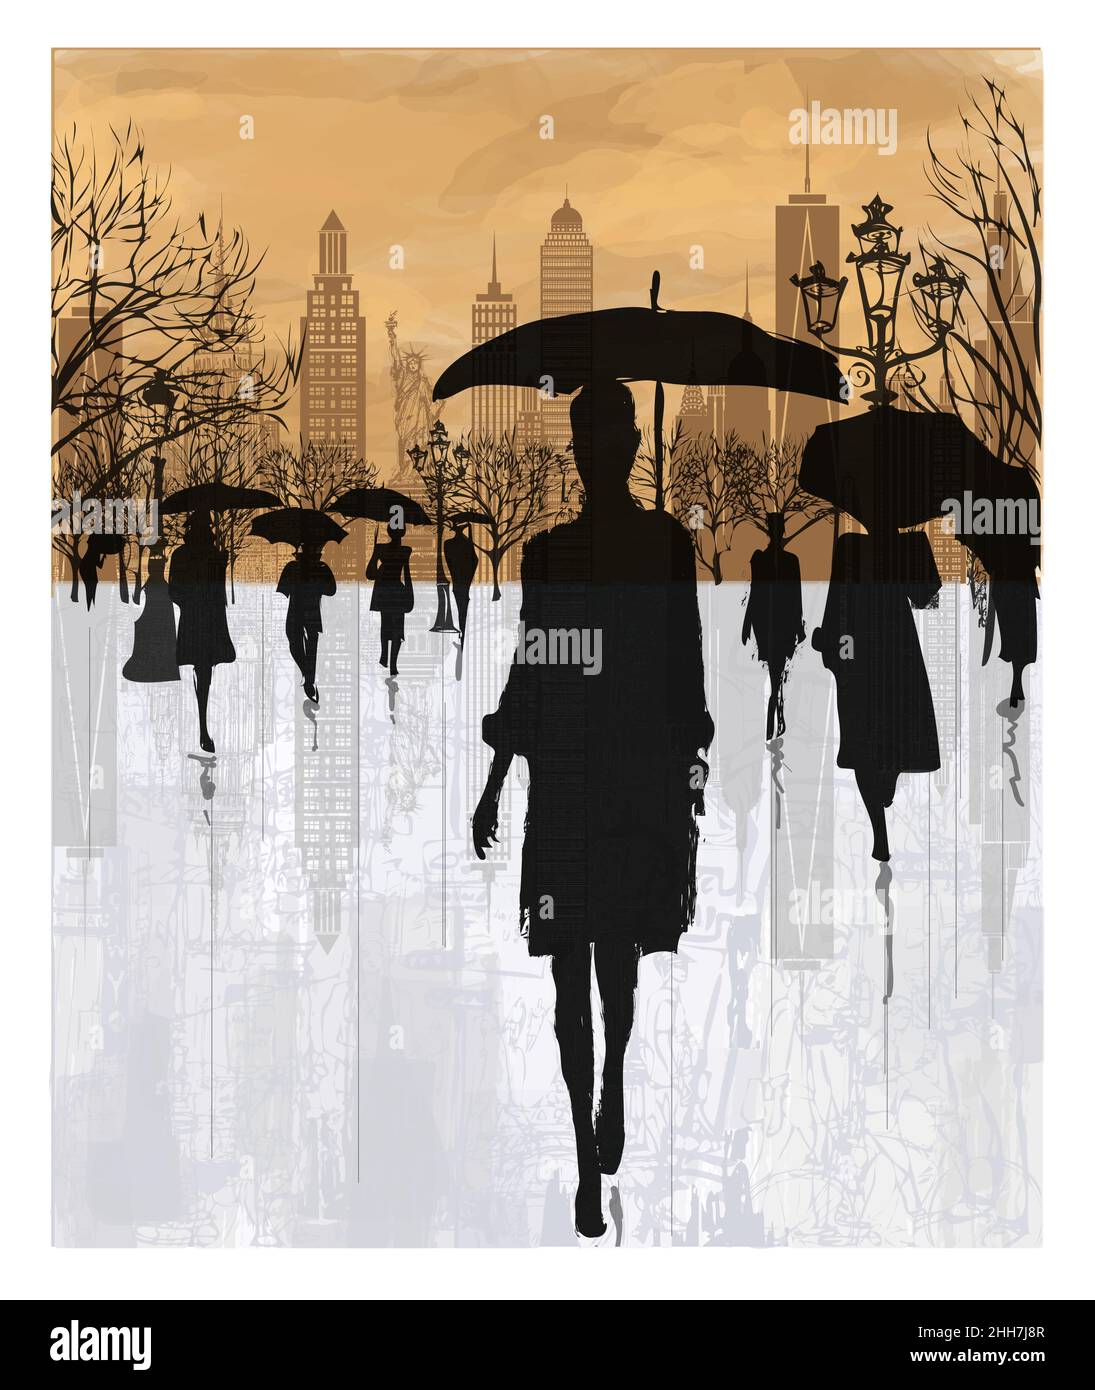 Persone sotto la pioggia a New York - illustrazione vettoriale (ideale per la stampa su tessuto o carta, poster o carta da parati, decorazione della casa) Illustrazione Vettoriale